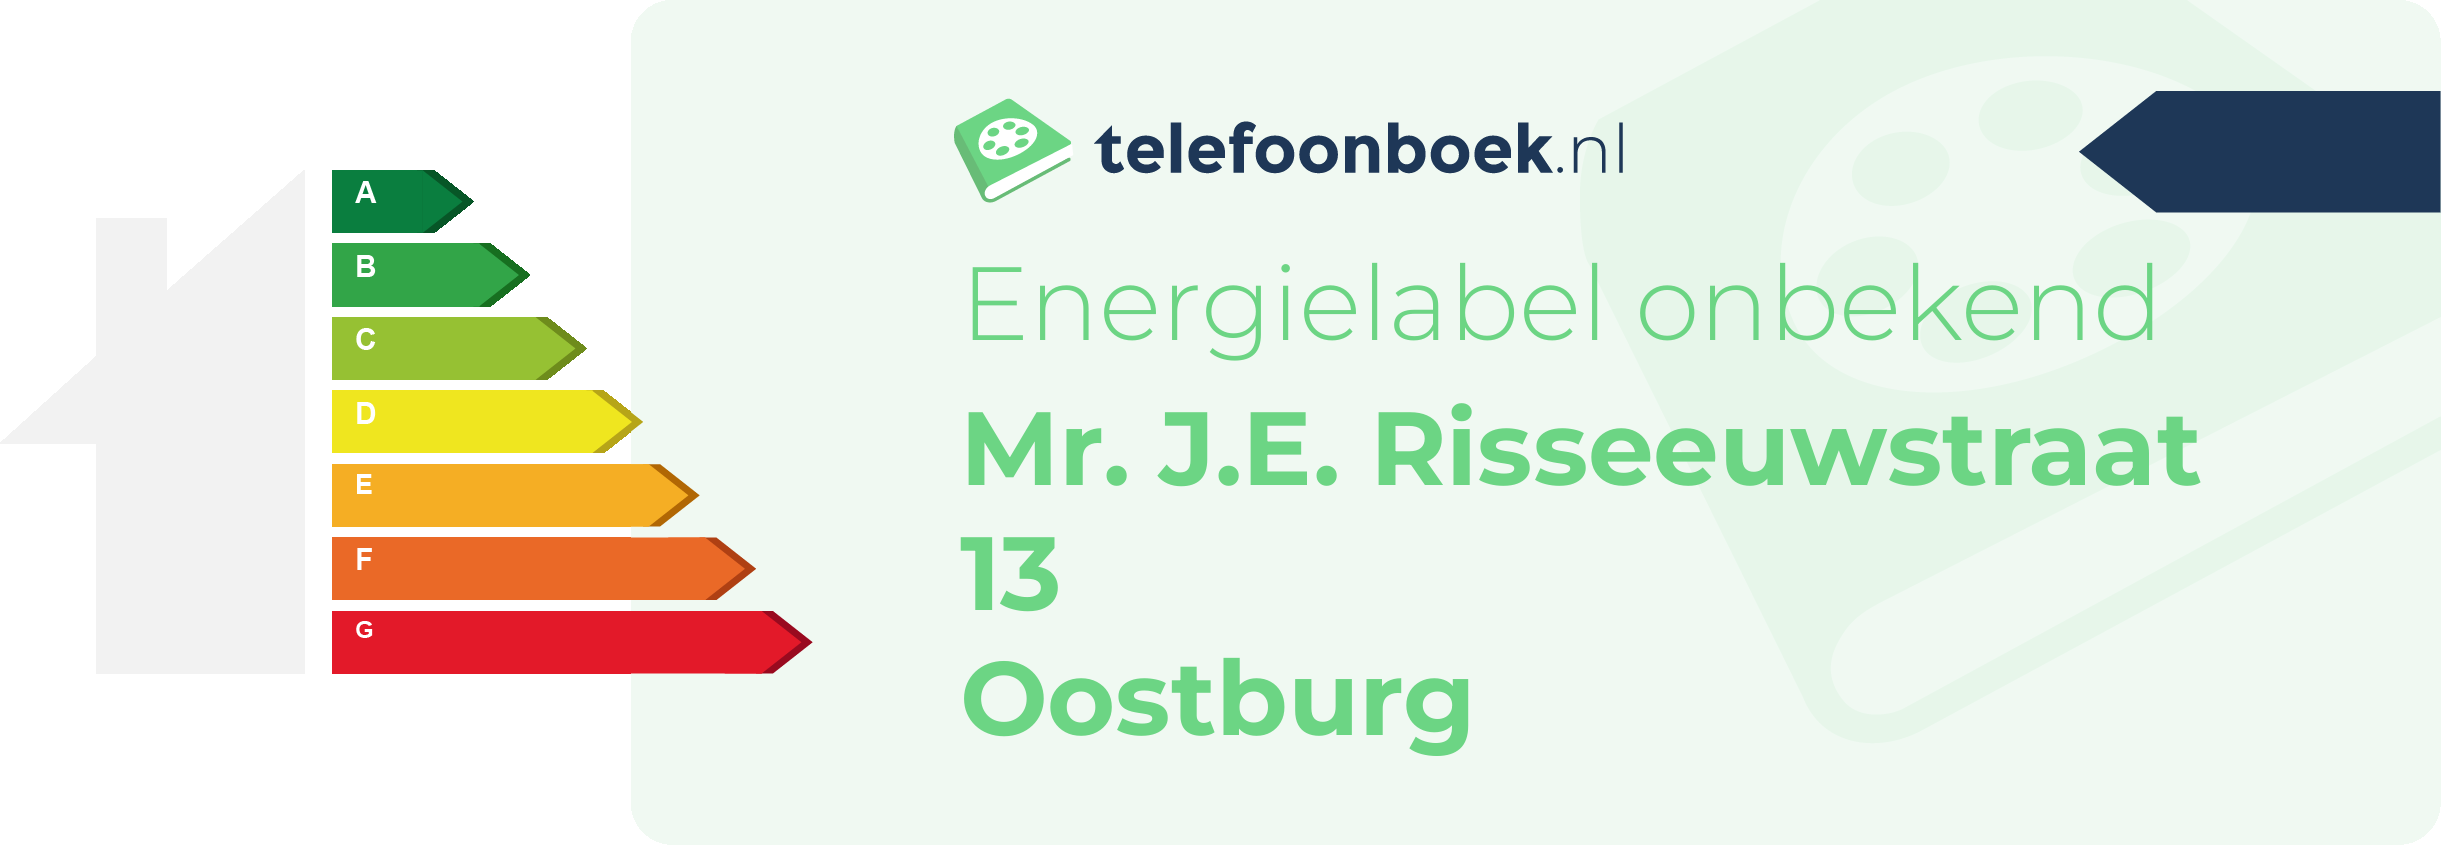 Energielabel Mr. J.E. Risseeuwstraat 13 Oostburg